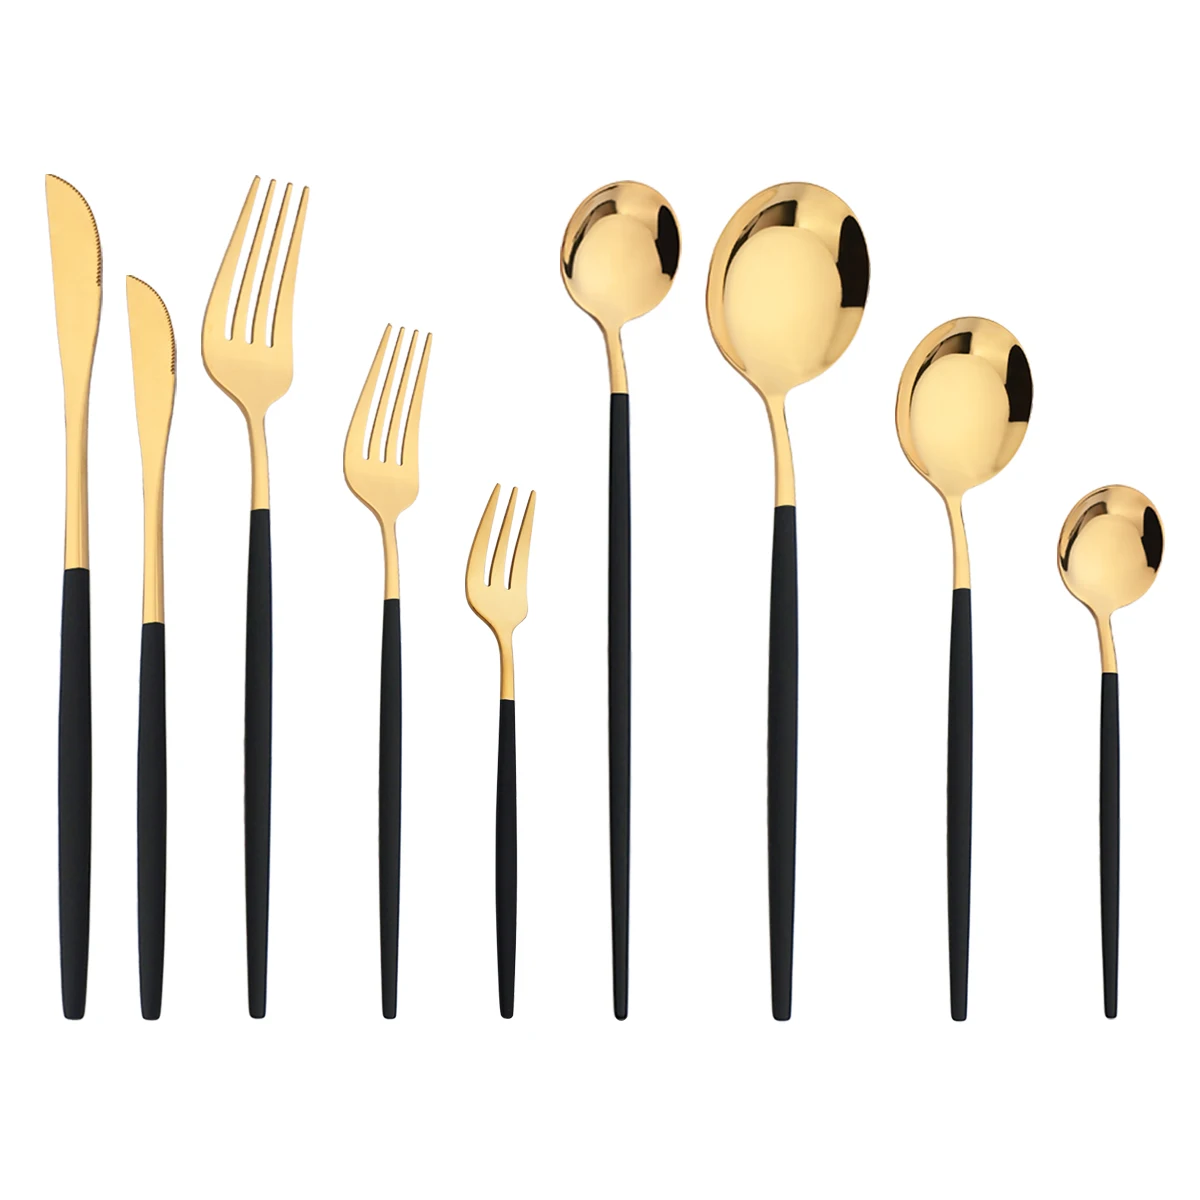 

Knife Dessert Fork Long Handle Spoon Chopsticks Dinnerware Cutlery Set Black Gold Flatware Stainless Steel Tableware Silverware